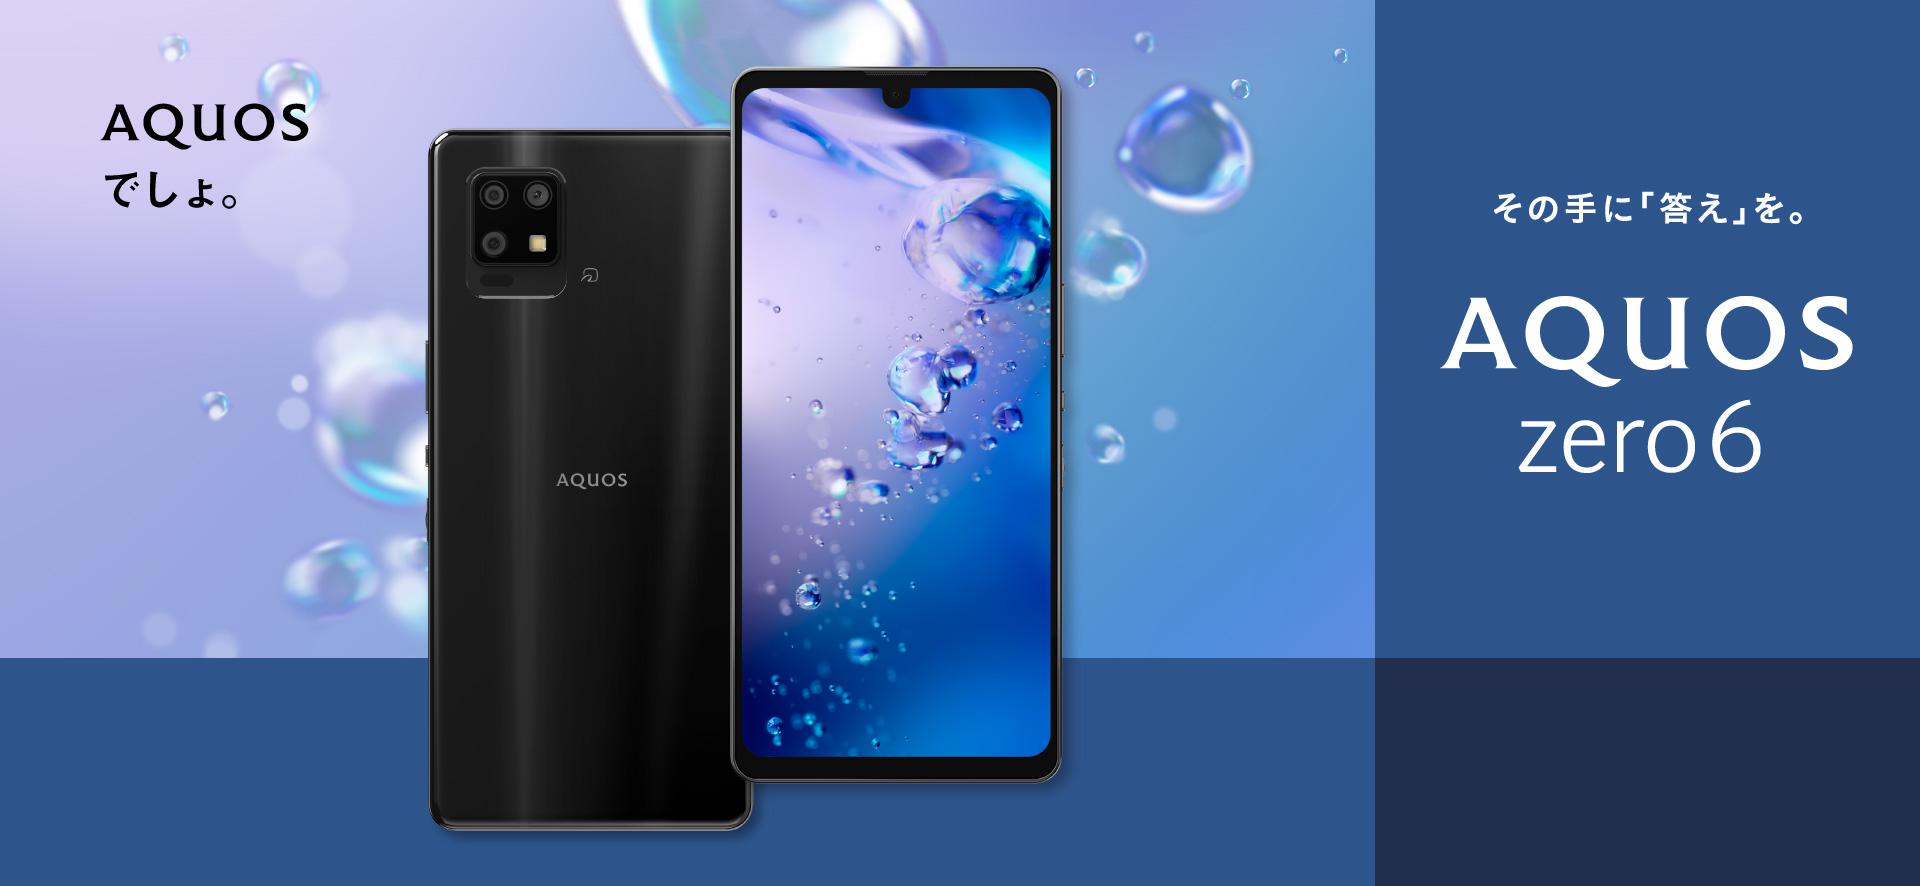 Sharp annonce le prix du smartphone AQUOS Zero 6 avec écran 240 Hz, puce Snapdragon 750G et protection IP68 